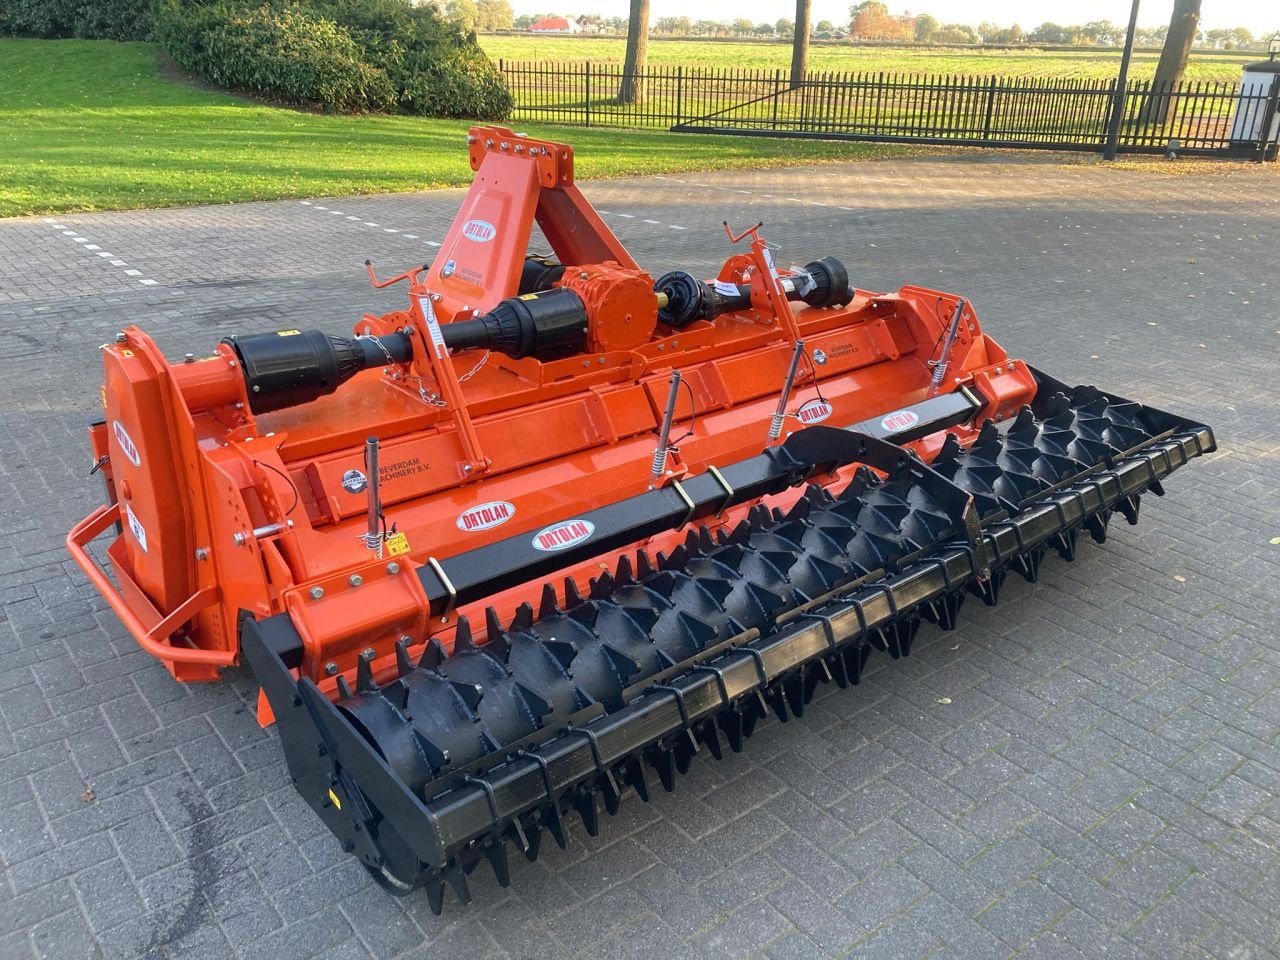 Bodenfräse des Typs Ortolan B 300 S Frees, Neumaschine in Vriezenveen (Bild 3)